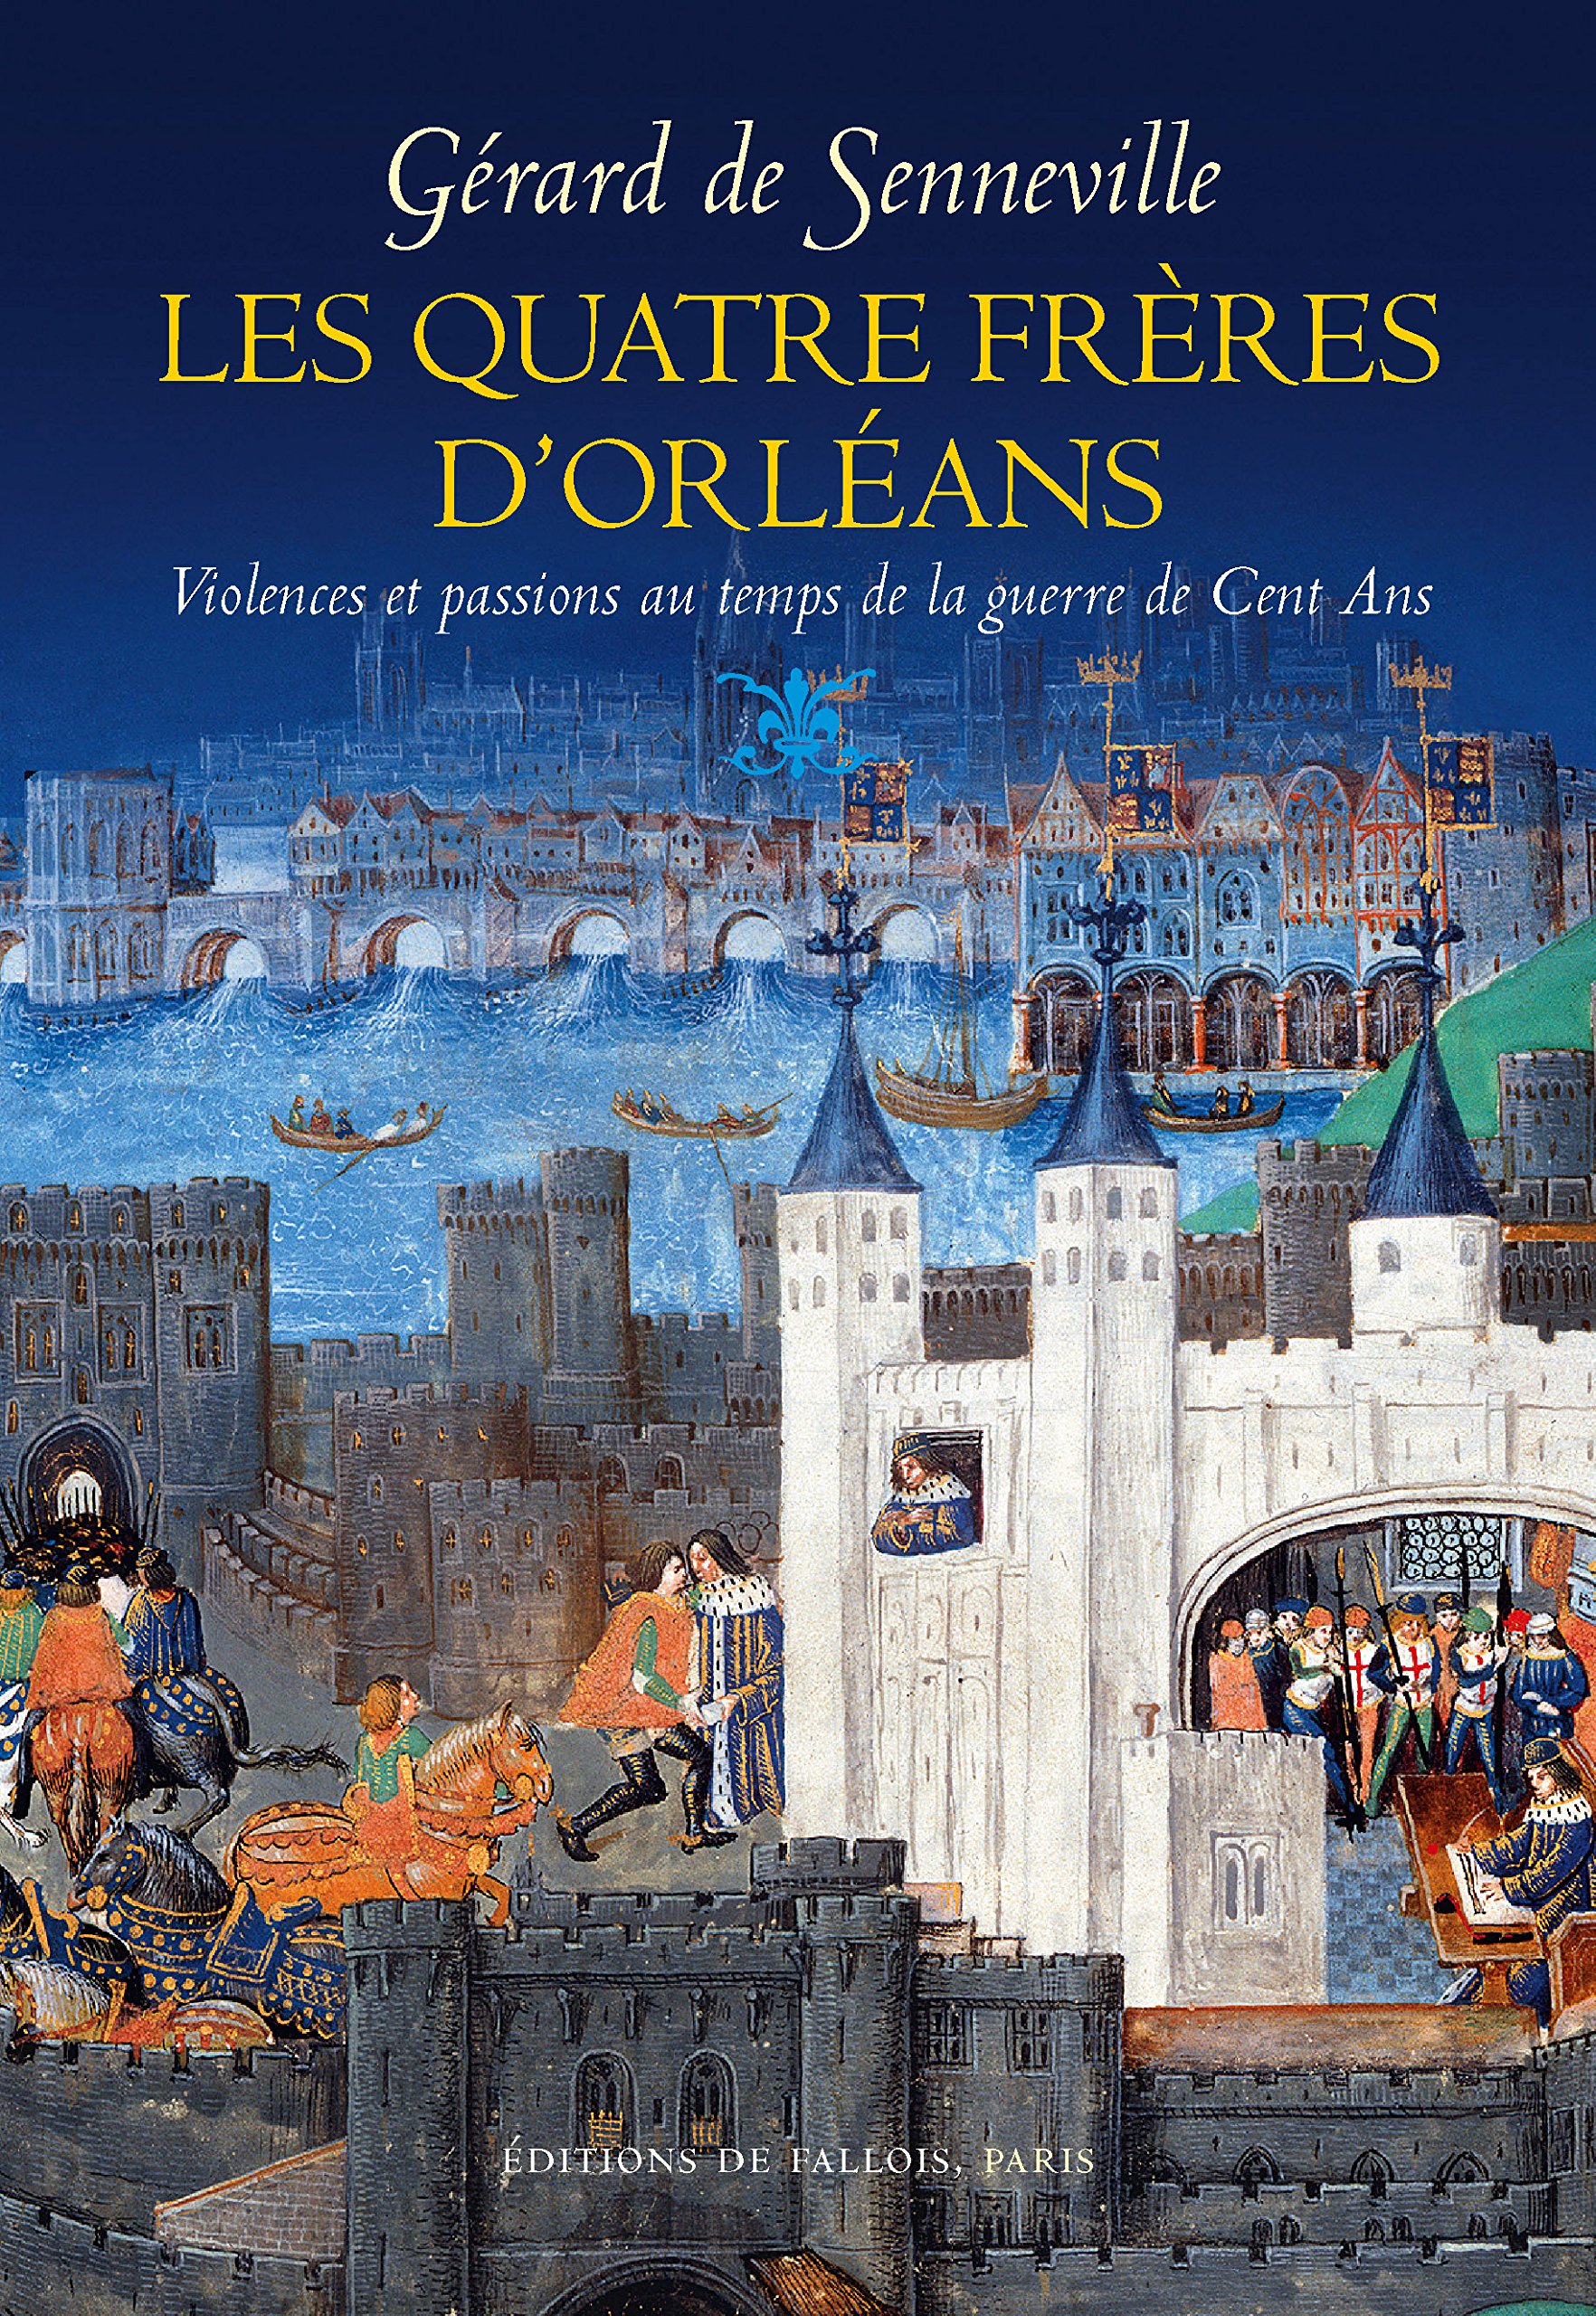 Les quatre frères d'Orléans. Violences et passions au temps de la guerre de Cent Ans, 2016, 379 p.